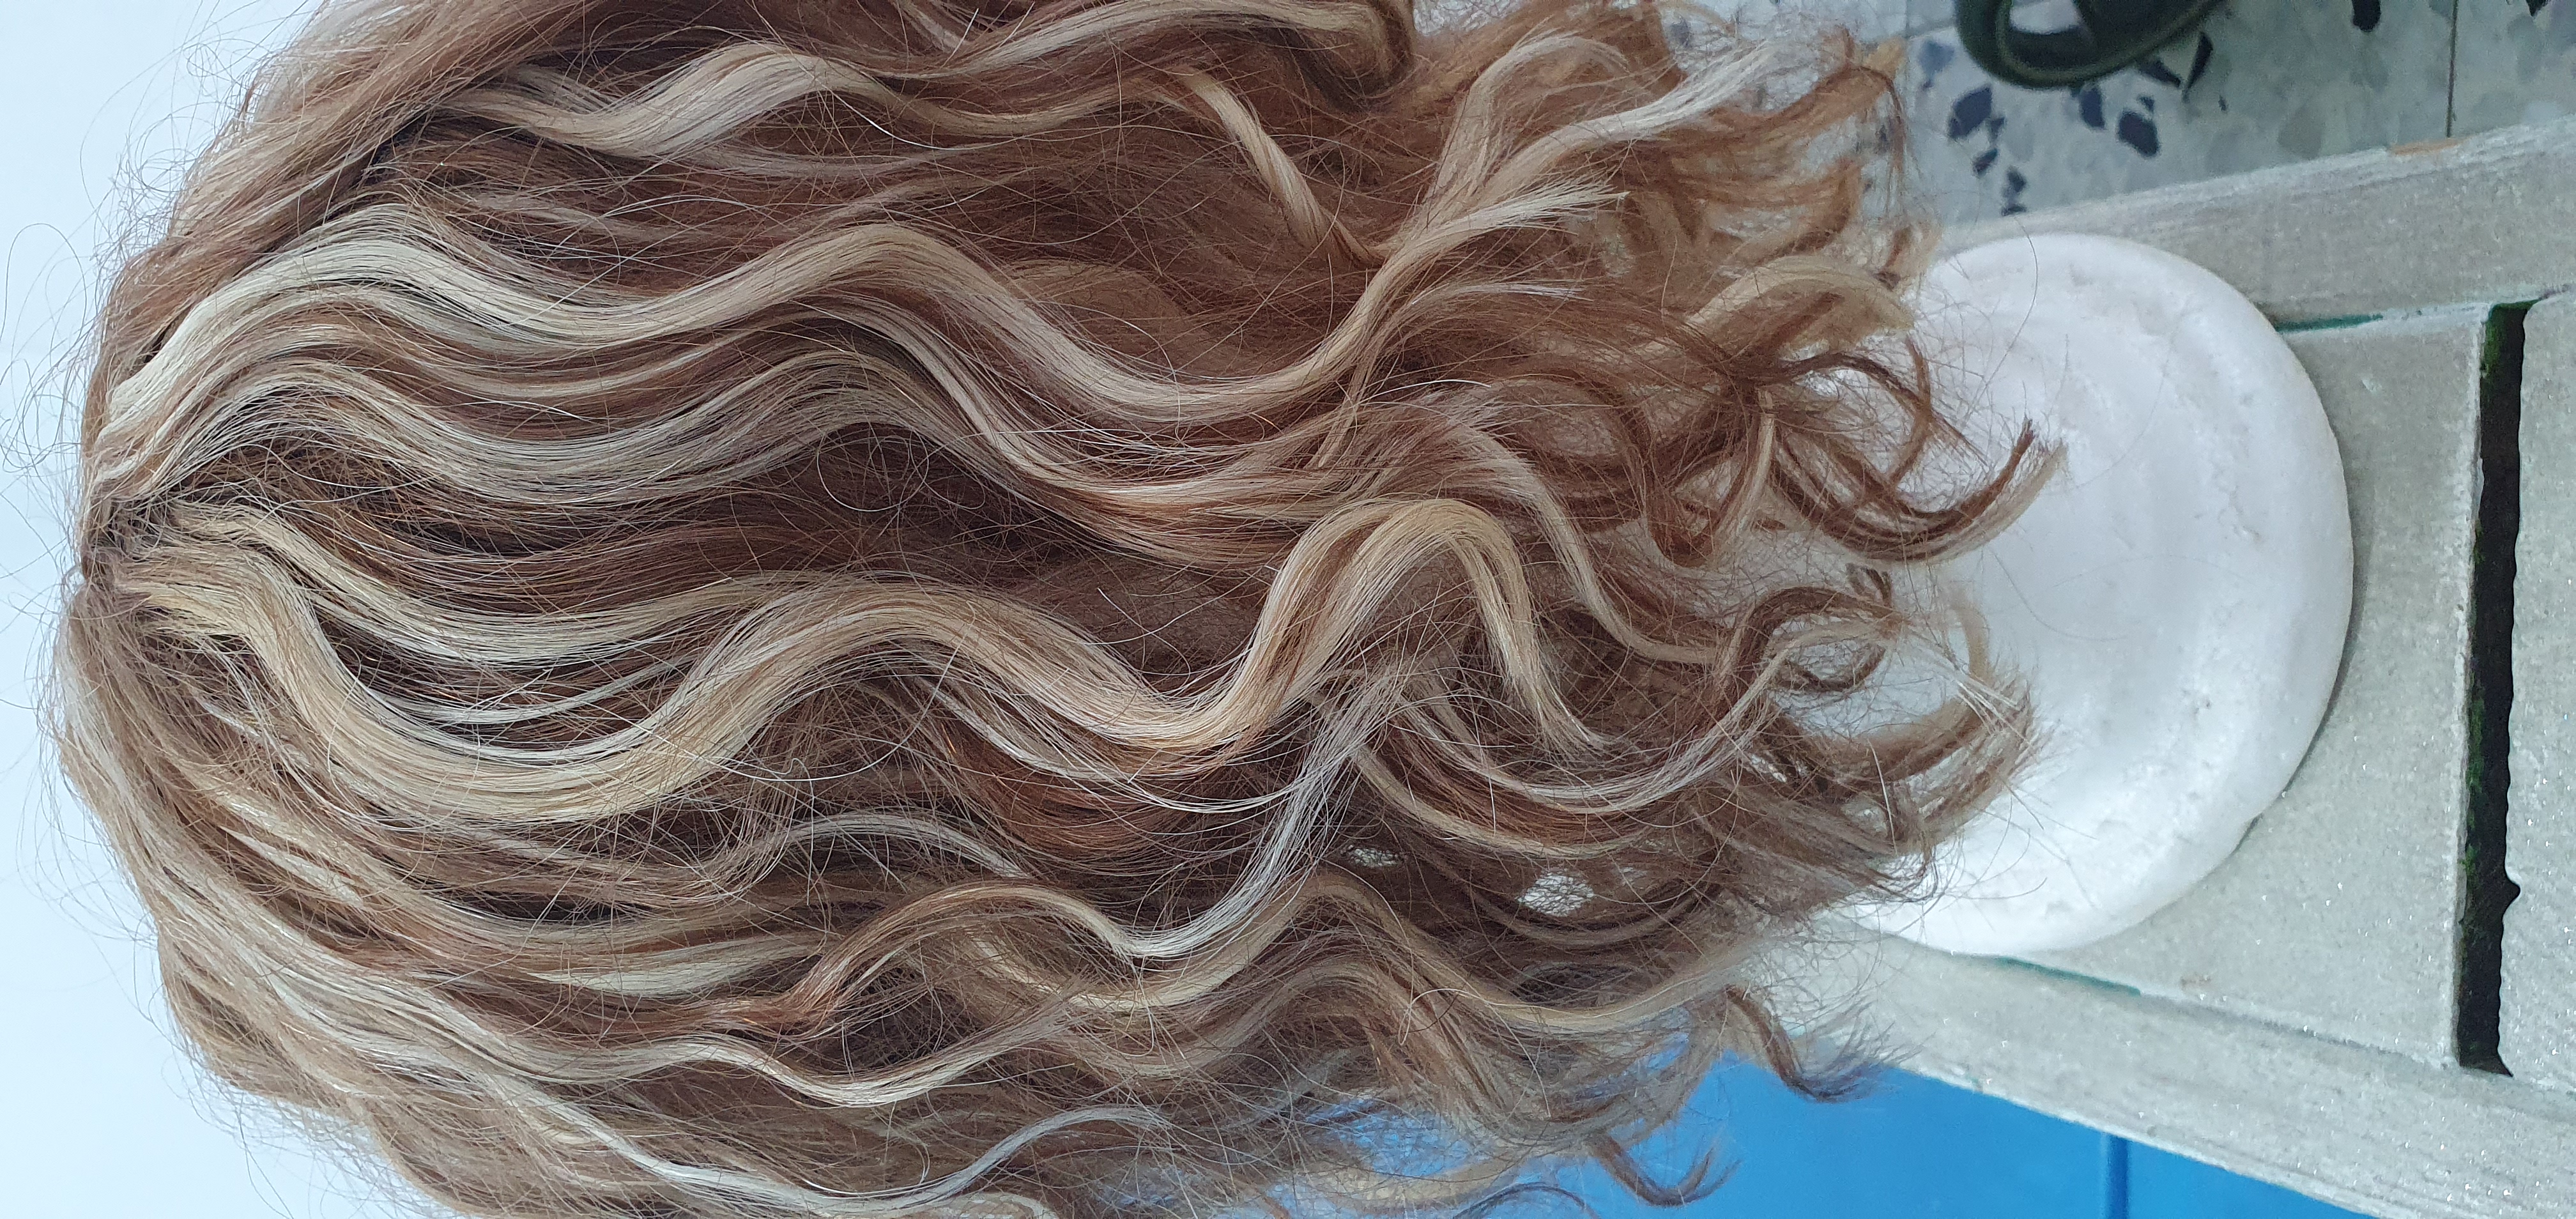 תמונה 2 ,תוספת שיער למכירה בתל אביב יד-שניה לנשים  שונות